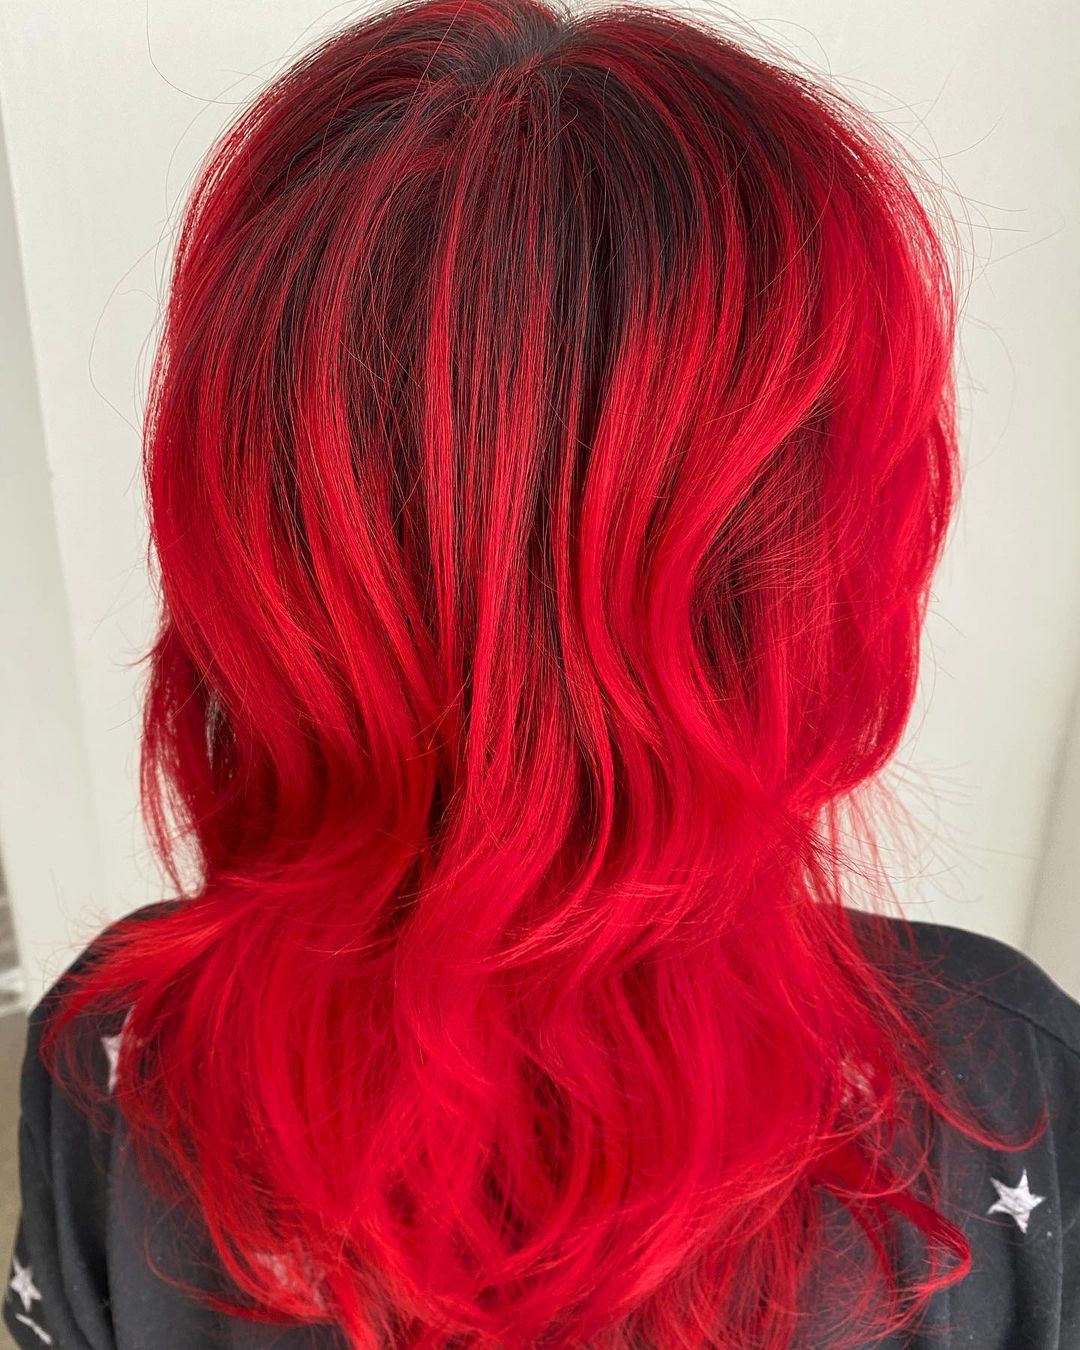 pelo rojo caliente con raíces negras